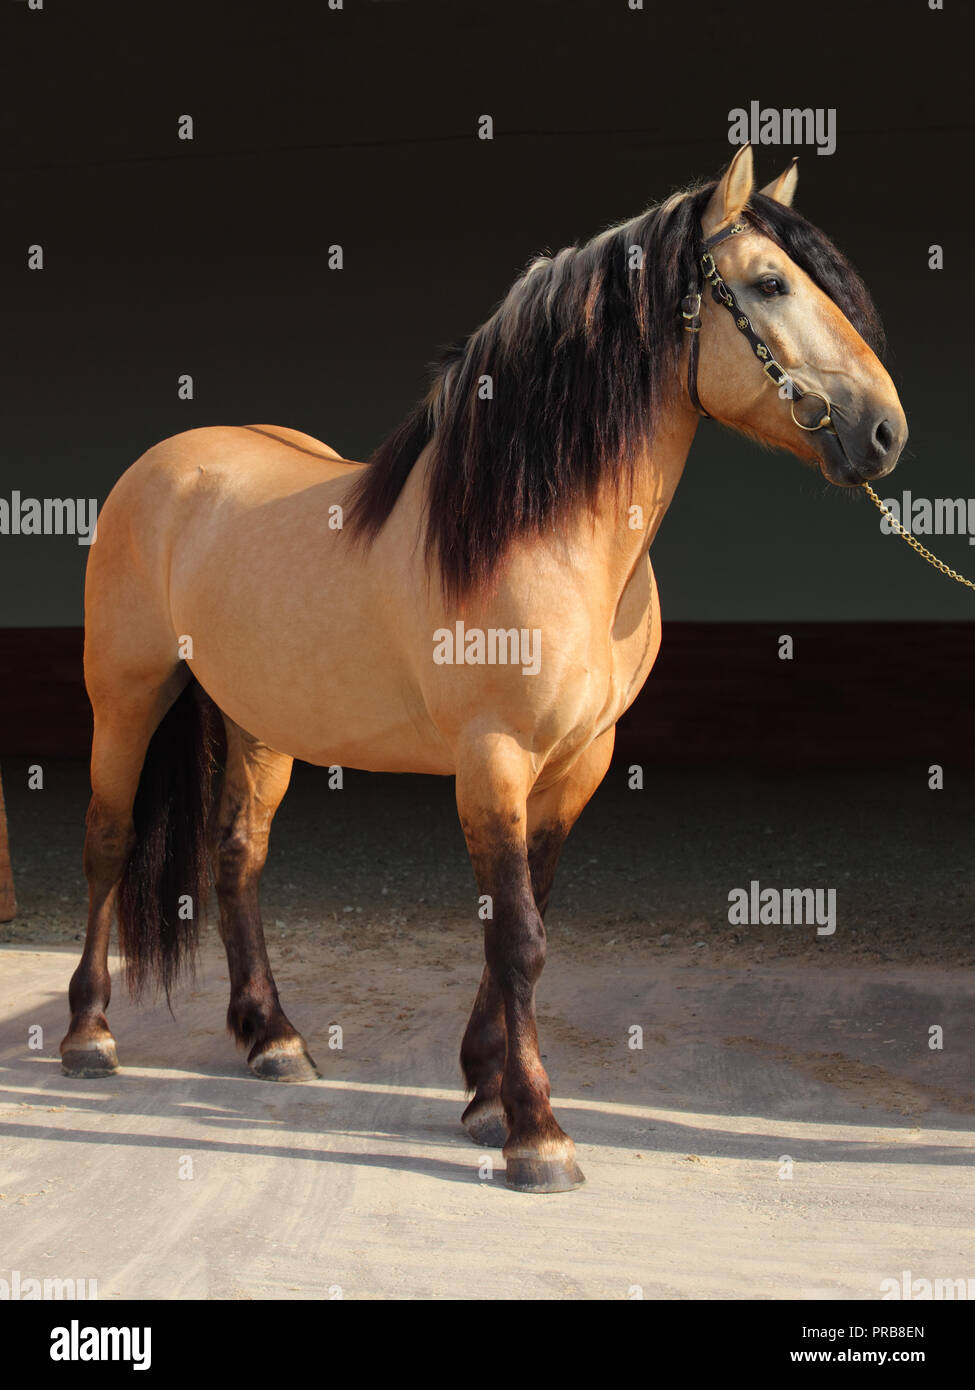 Paso Fino horse dark stable portrait Stock Photo